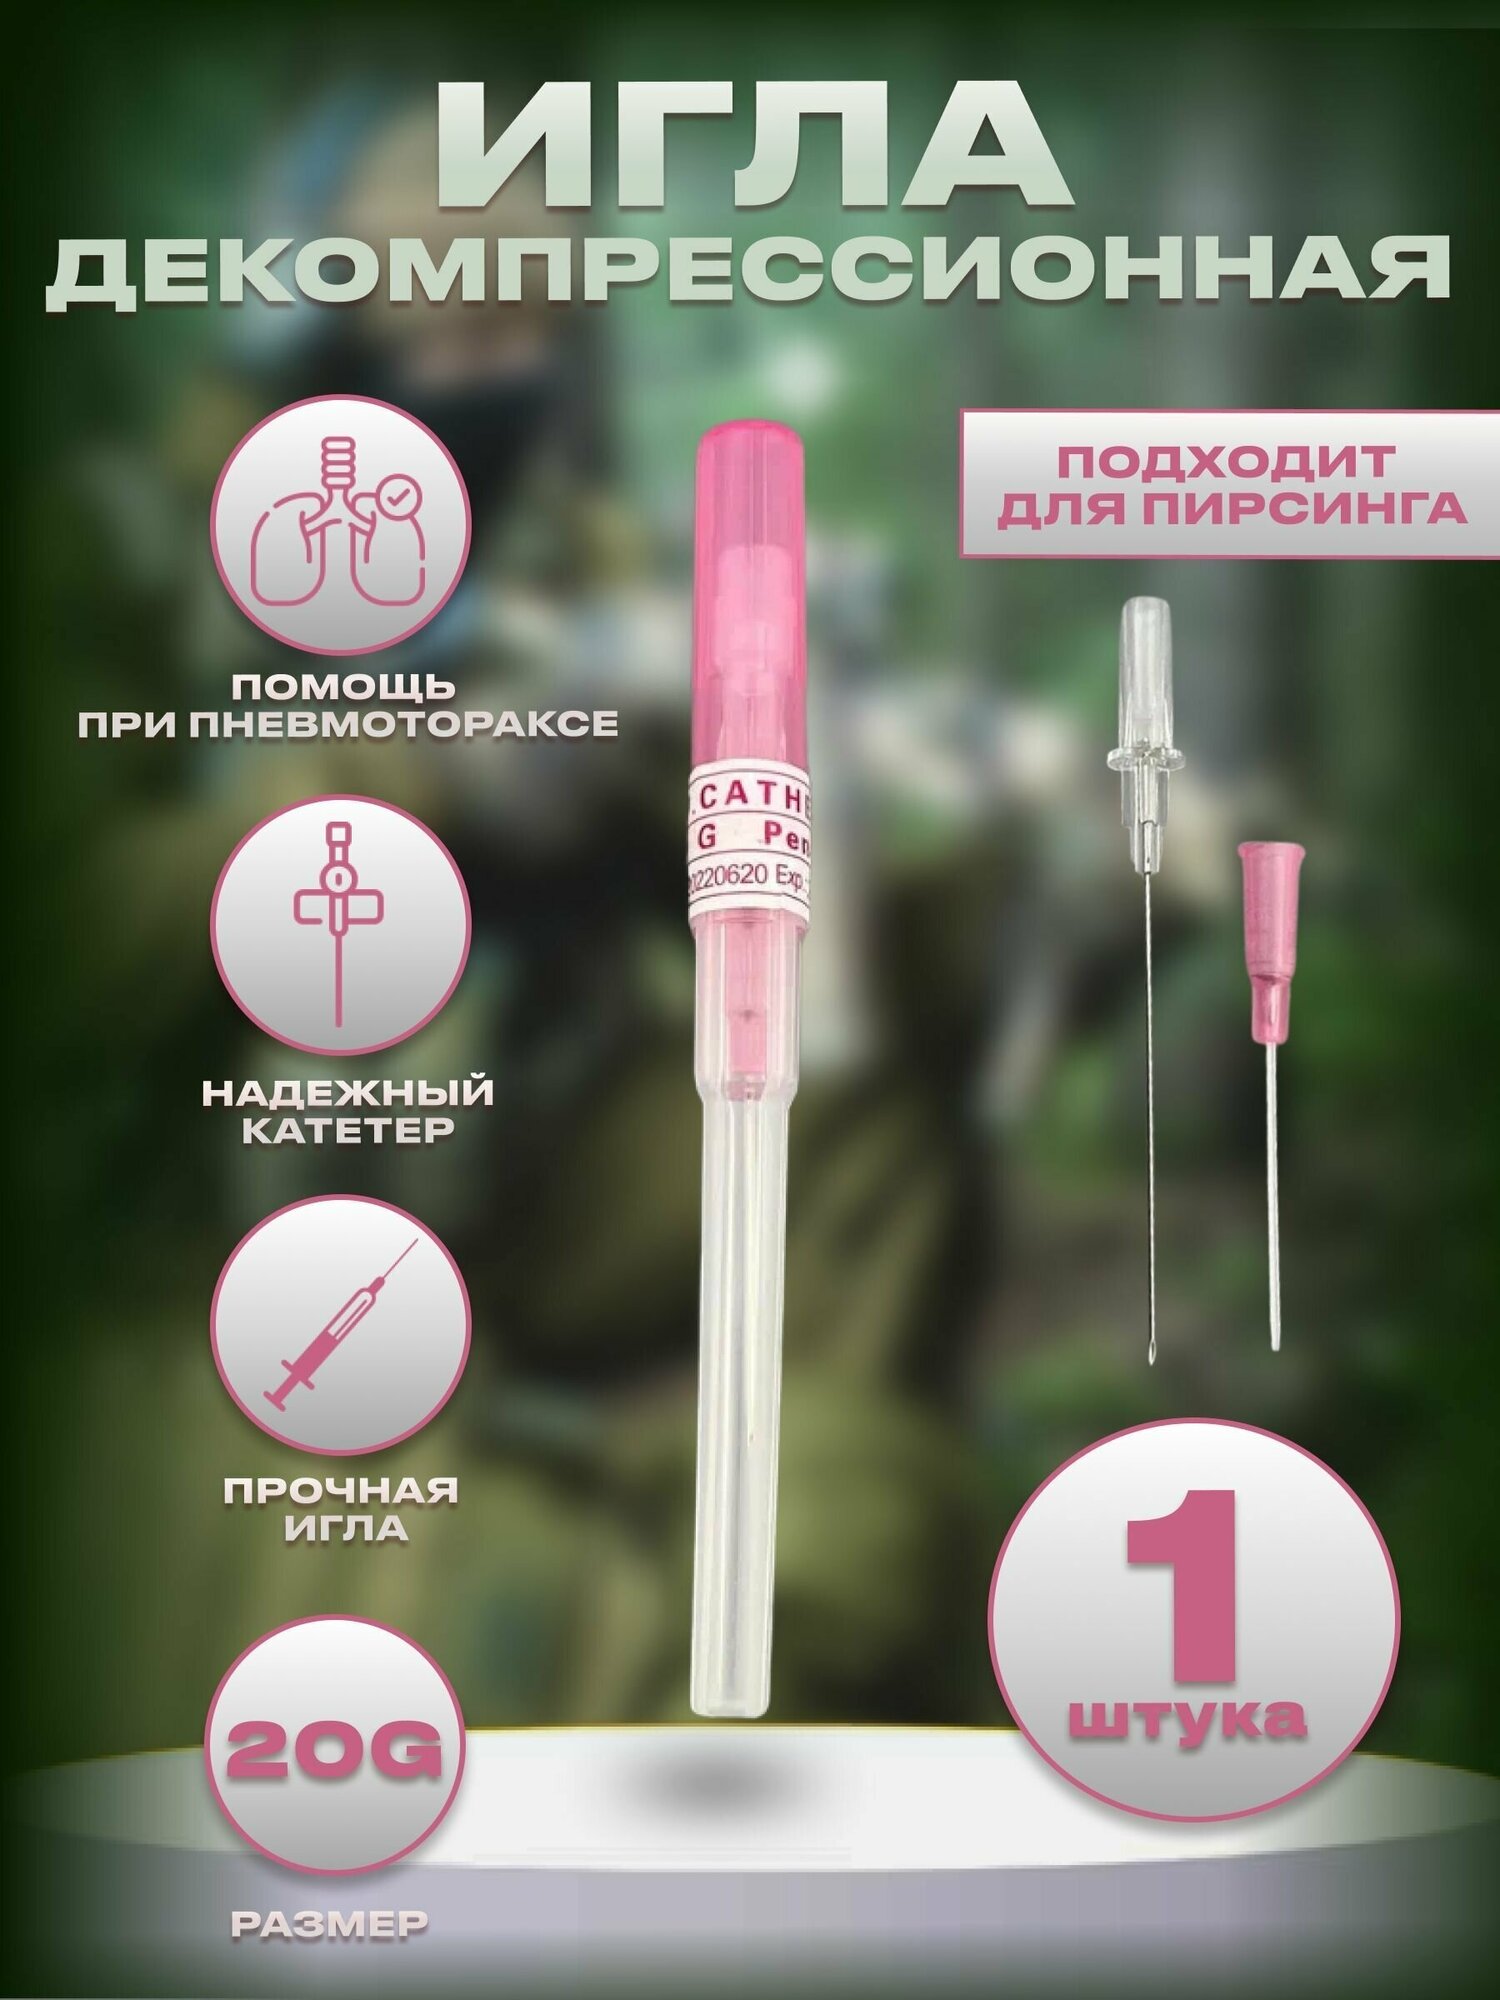 Тактическая инъекционная игла декомпрессионная розовая 20G 0.8 мм. (от пневмоторакса) игла для пирсинга - 1 шт